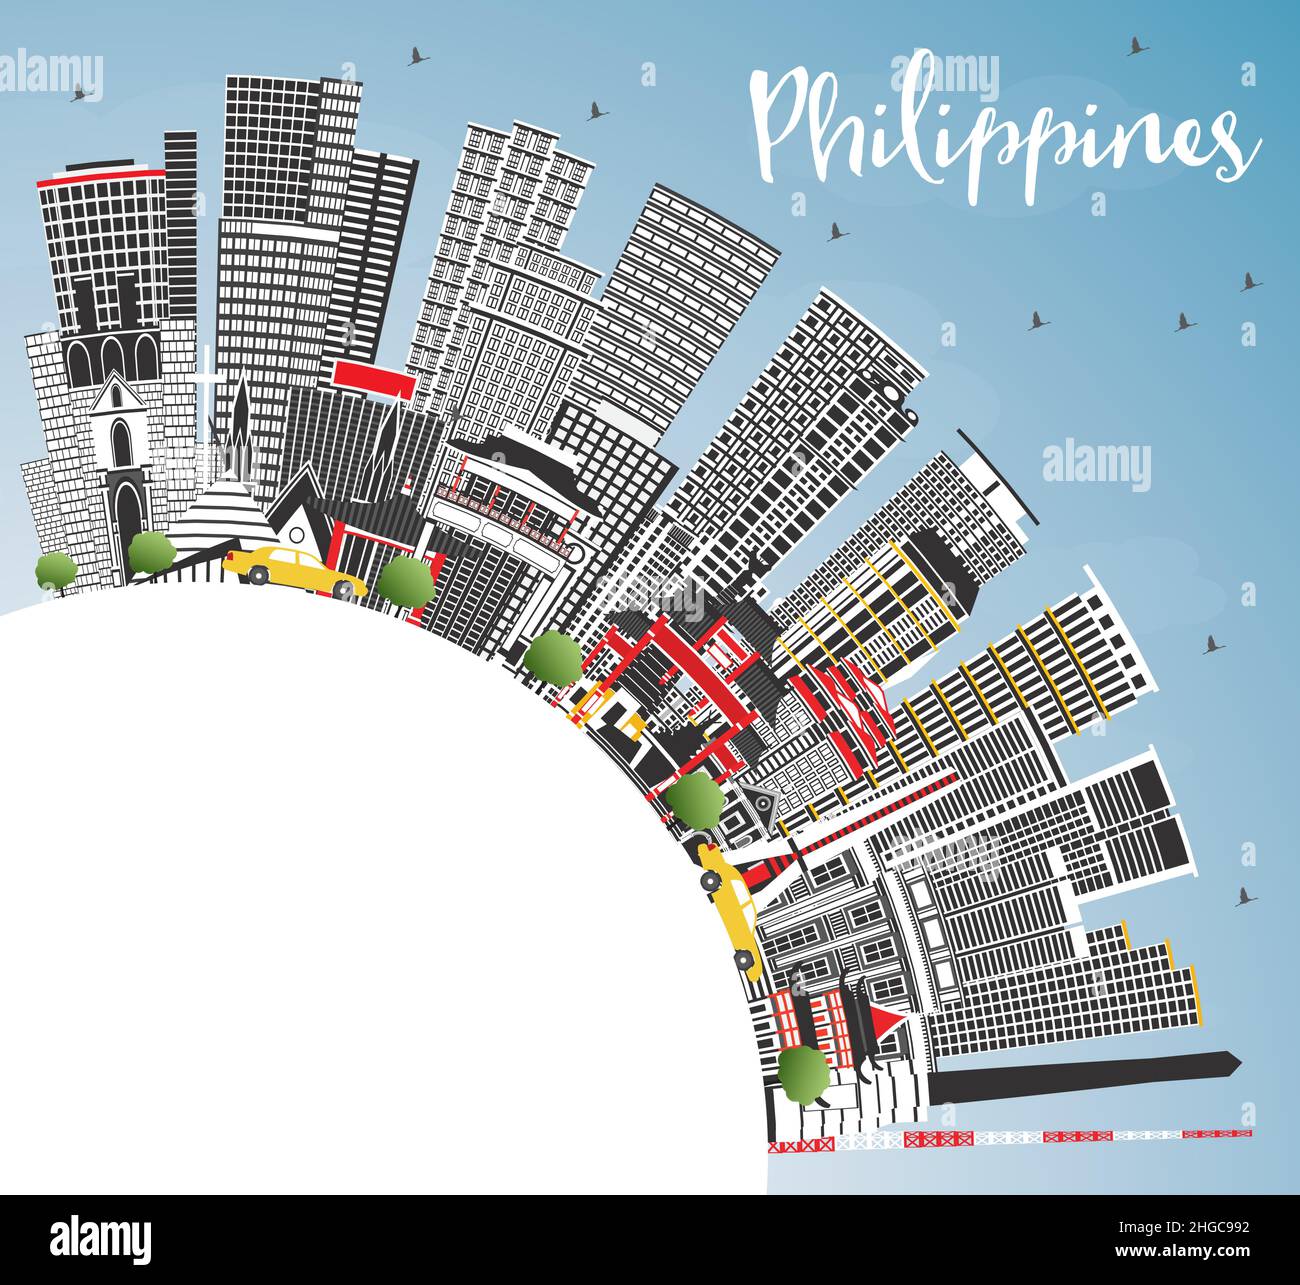 Vue panoramique de la ville de Philippines avec bâtiments gris, ciel bleu et espace de copie. Illustration vectorielle. Concept de voyage avec architecture historique. Illustration de Vecteur